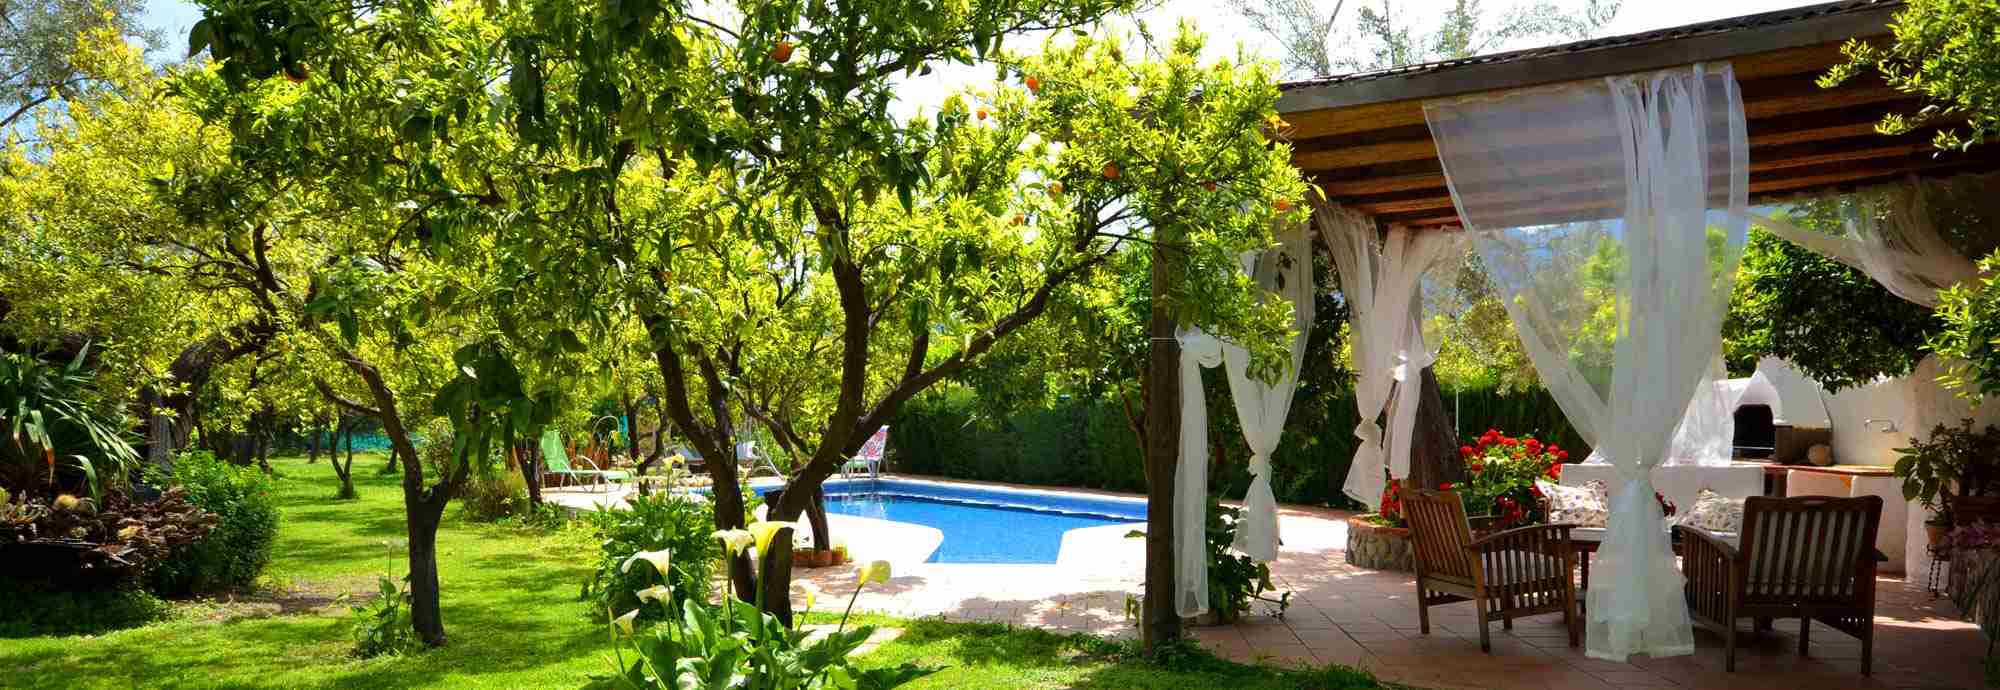 Fabulosa casa rural de 2 dormitorios con piscina privada y jardines preciosos 